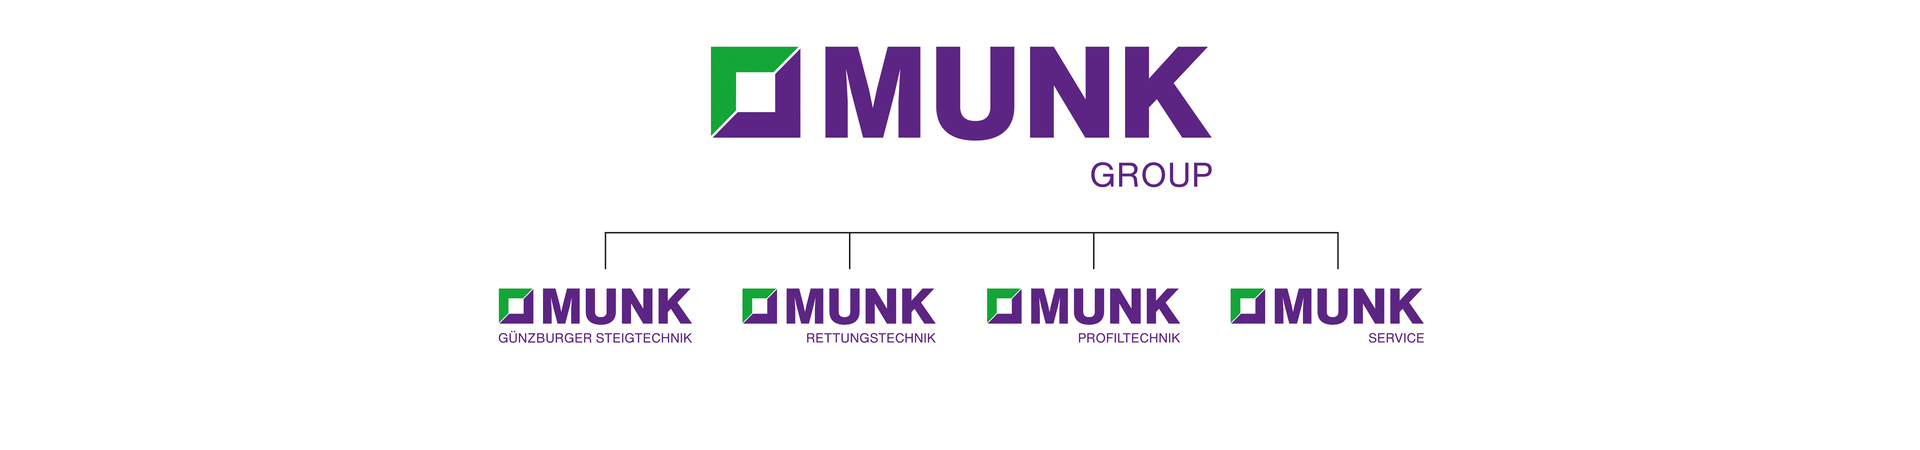 MUNK Group : Structure de l'entreprise | © MUNK GmbH